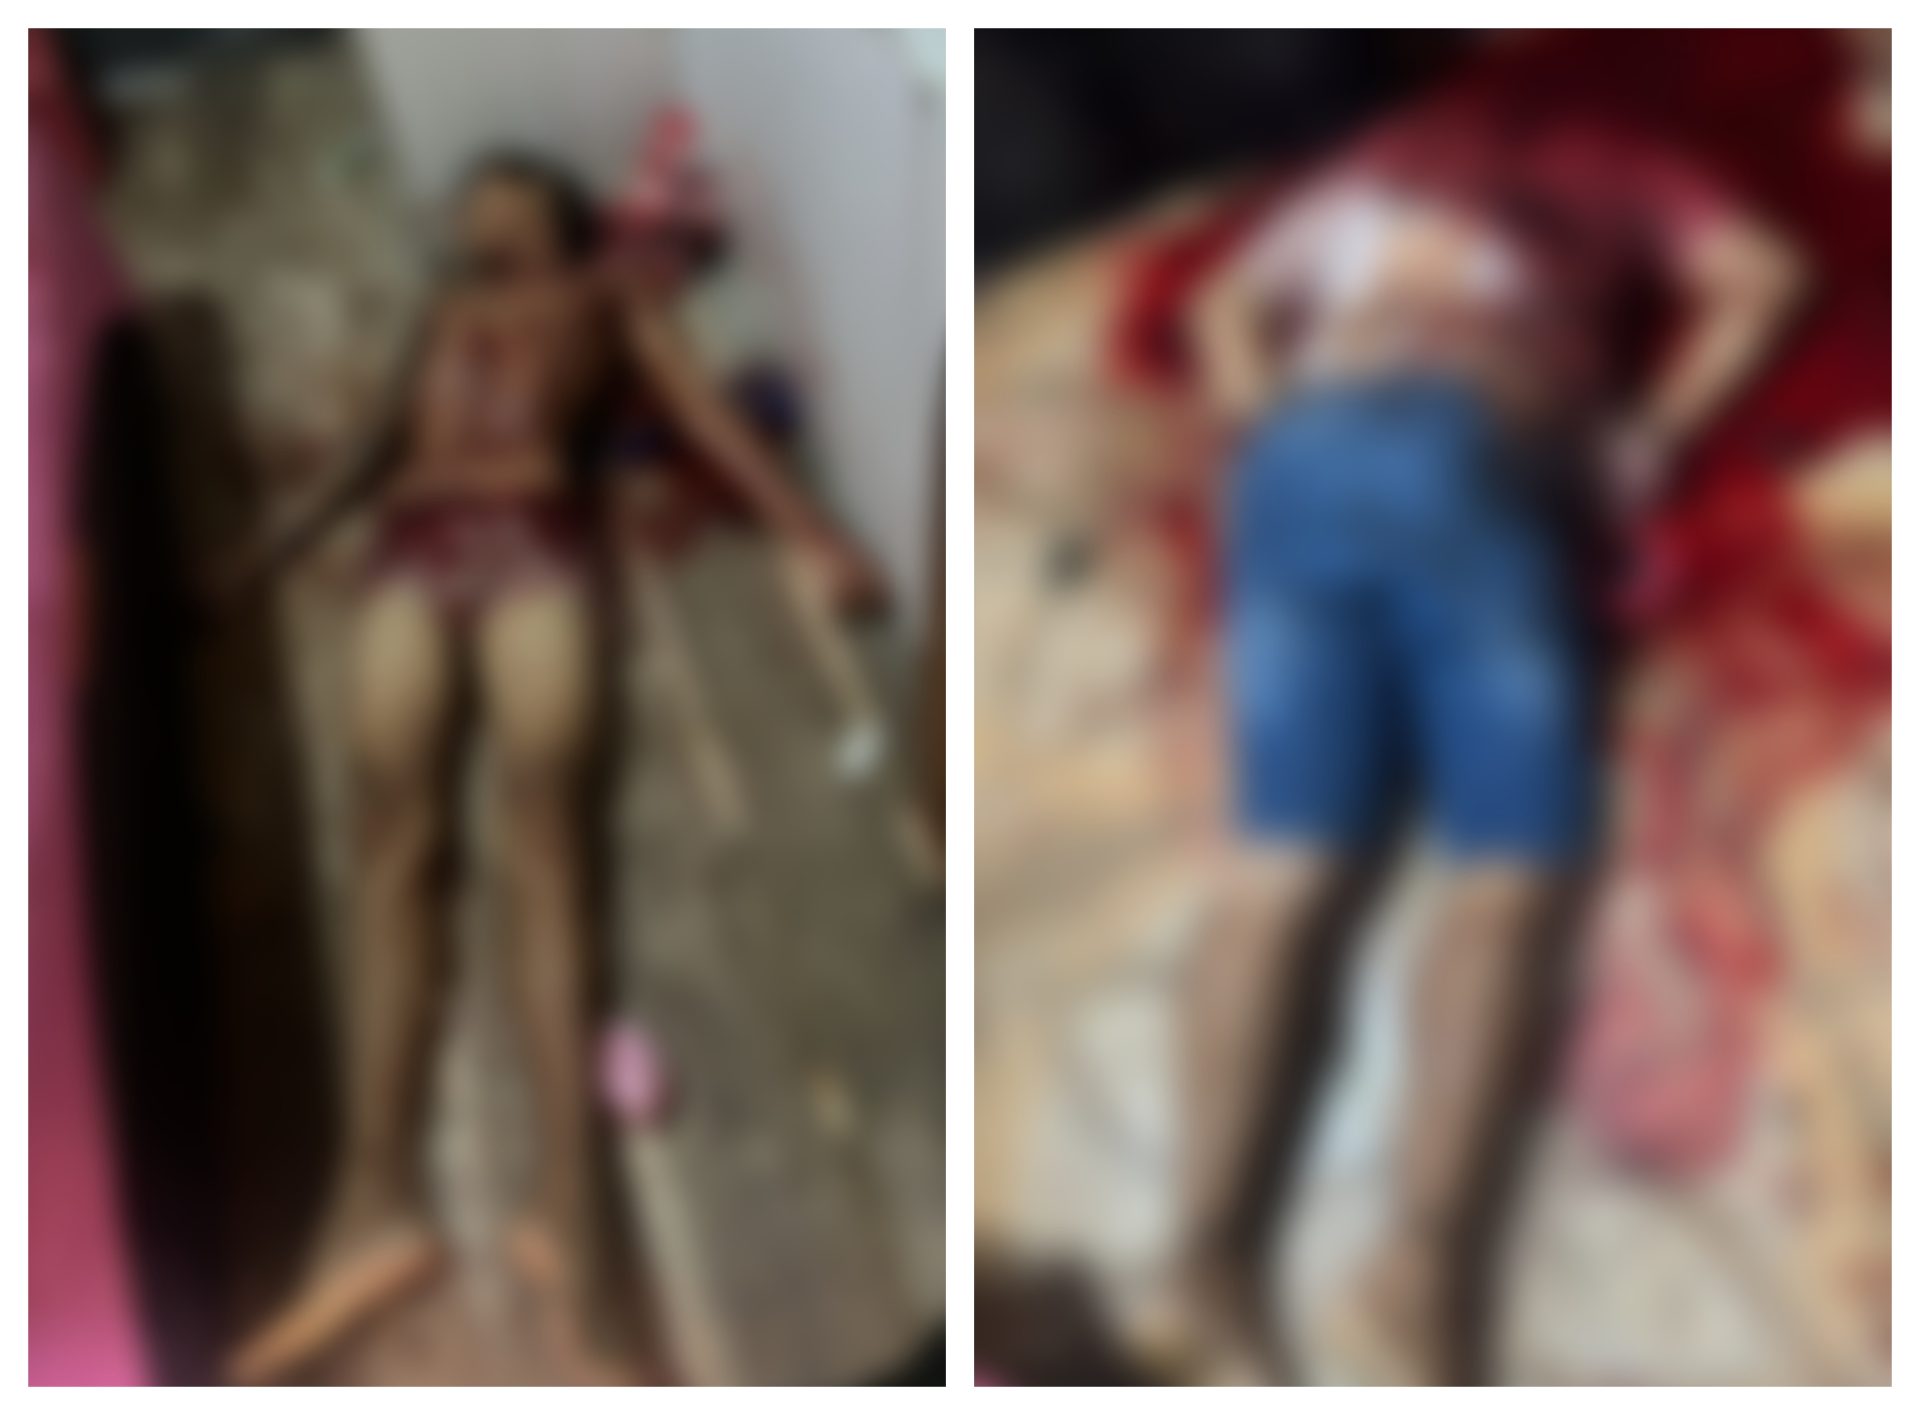 Suspeitos levaram a cabeça de uma das vítimas - Foto: Reprodução/WhatsApp